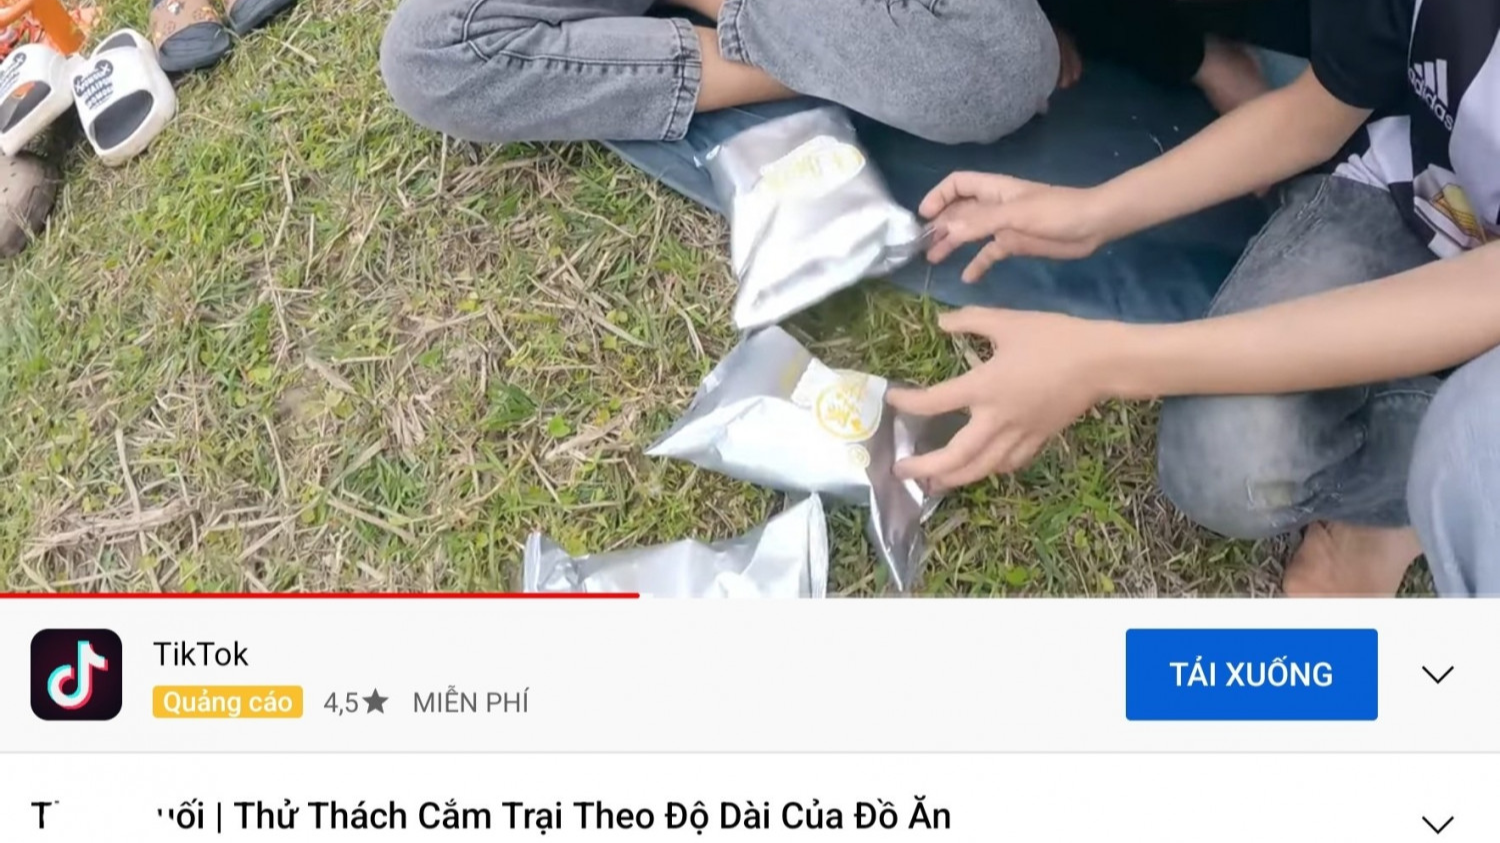 Phát hiện chủ kênh Youtube ở Quảng Ninh kiếm hơn 11 tỷ đồng không nộp thuế